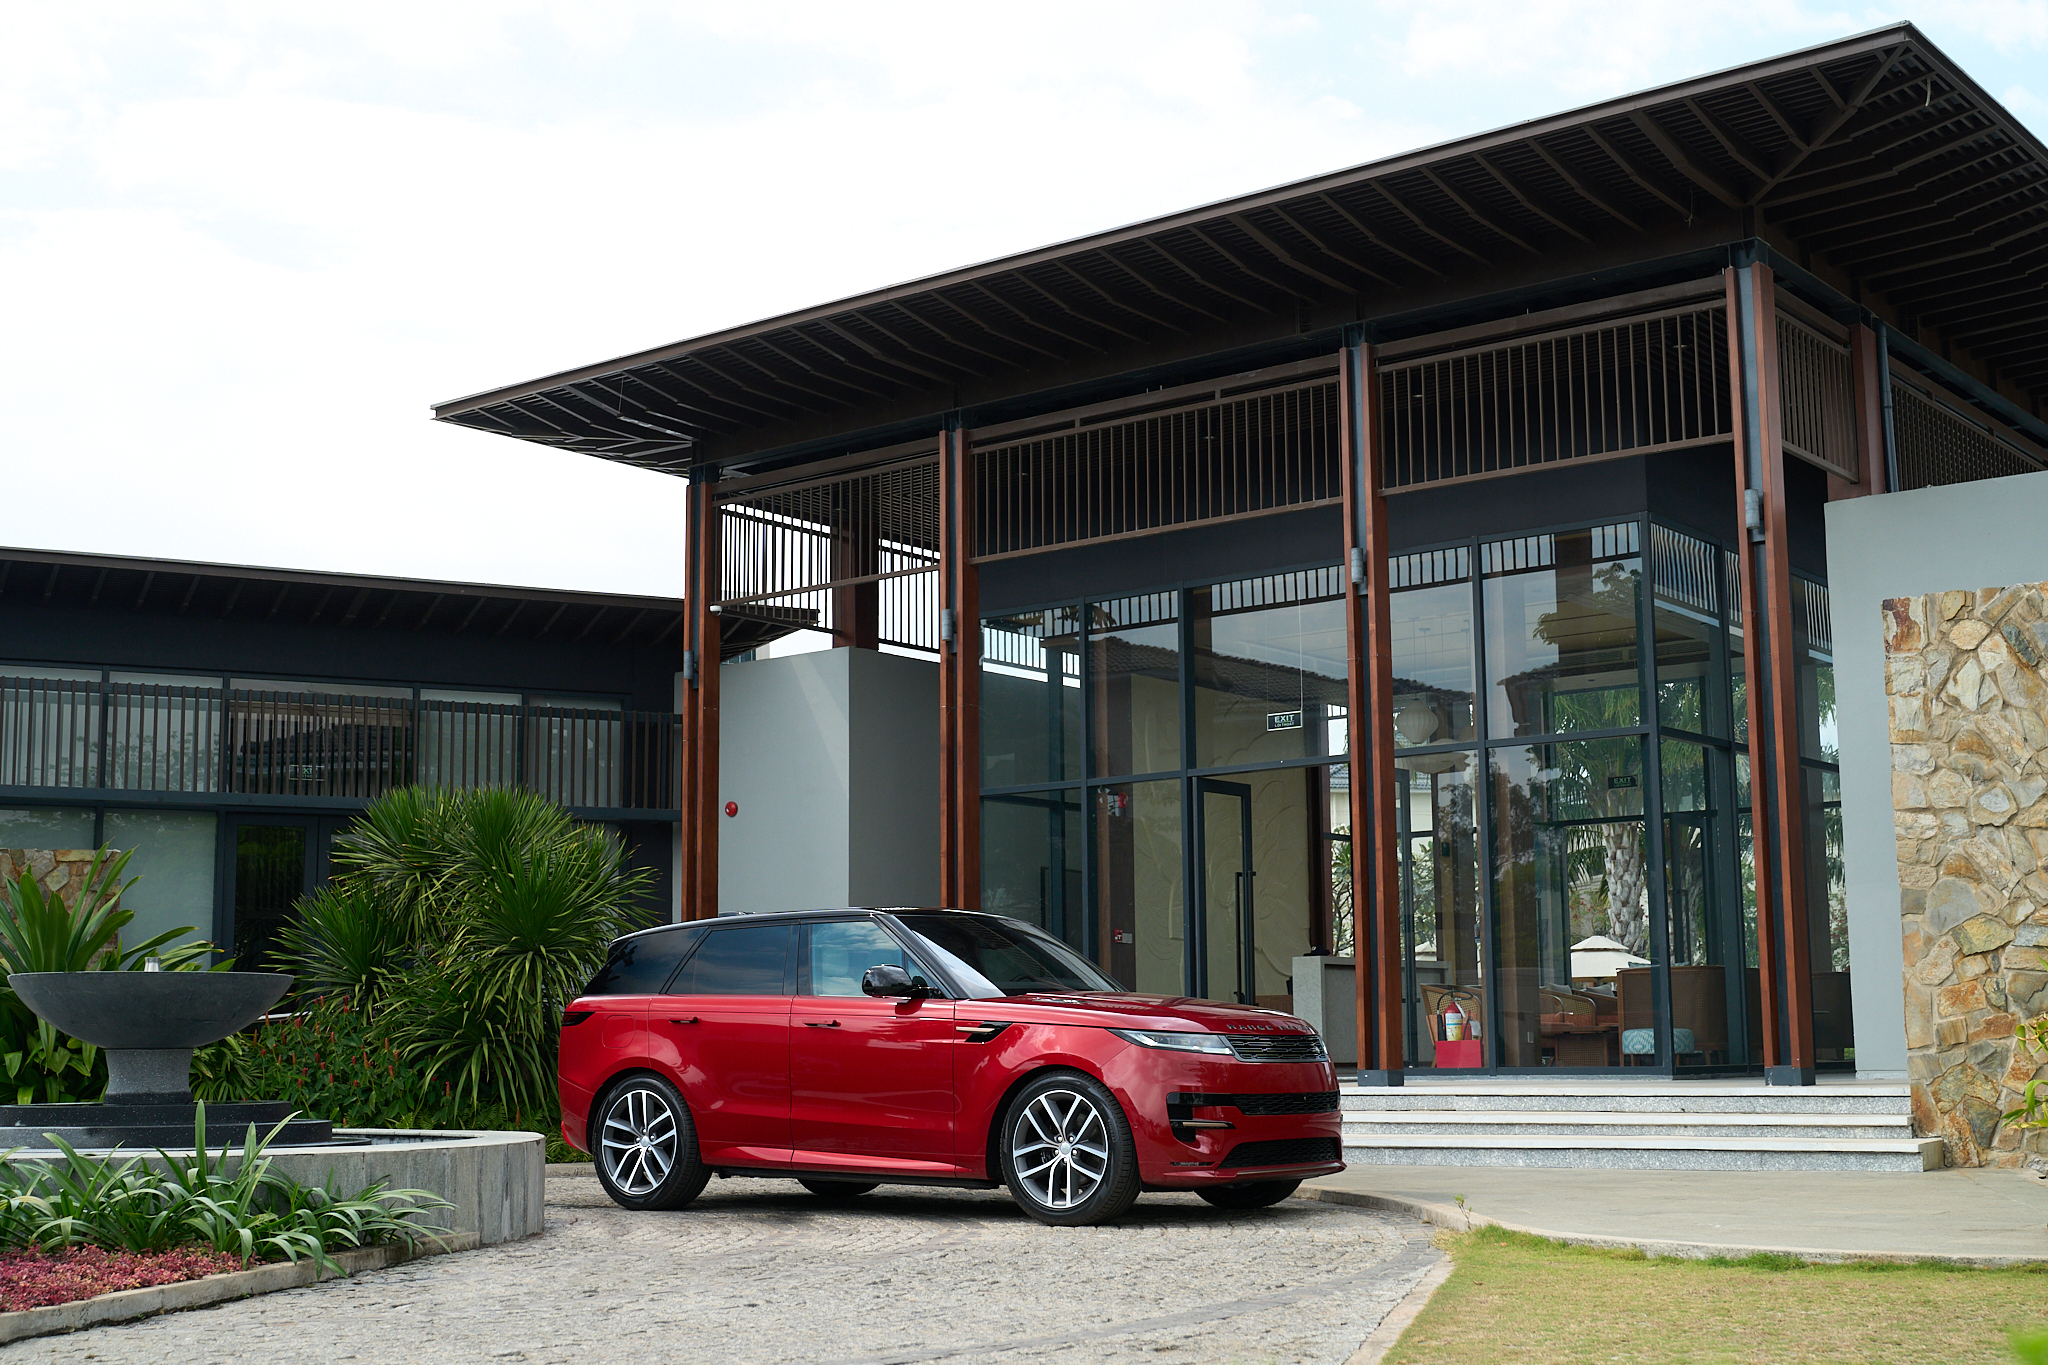 Các tỷ lệ ấn tượng làm nổi bật nét đặc trưng của Range Rover Sport, với phần cản trước ngắn, phần đầu xe chắc chắn và kính vuốt dốc ở cả trước và sau. Các yếu tố đặc trưng thương hiệu này mang lại sự hiện diện mạnh mẽ và ấn tượng trên đường để truyền tải sức mạnh và hiệu suất.